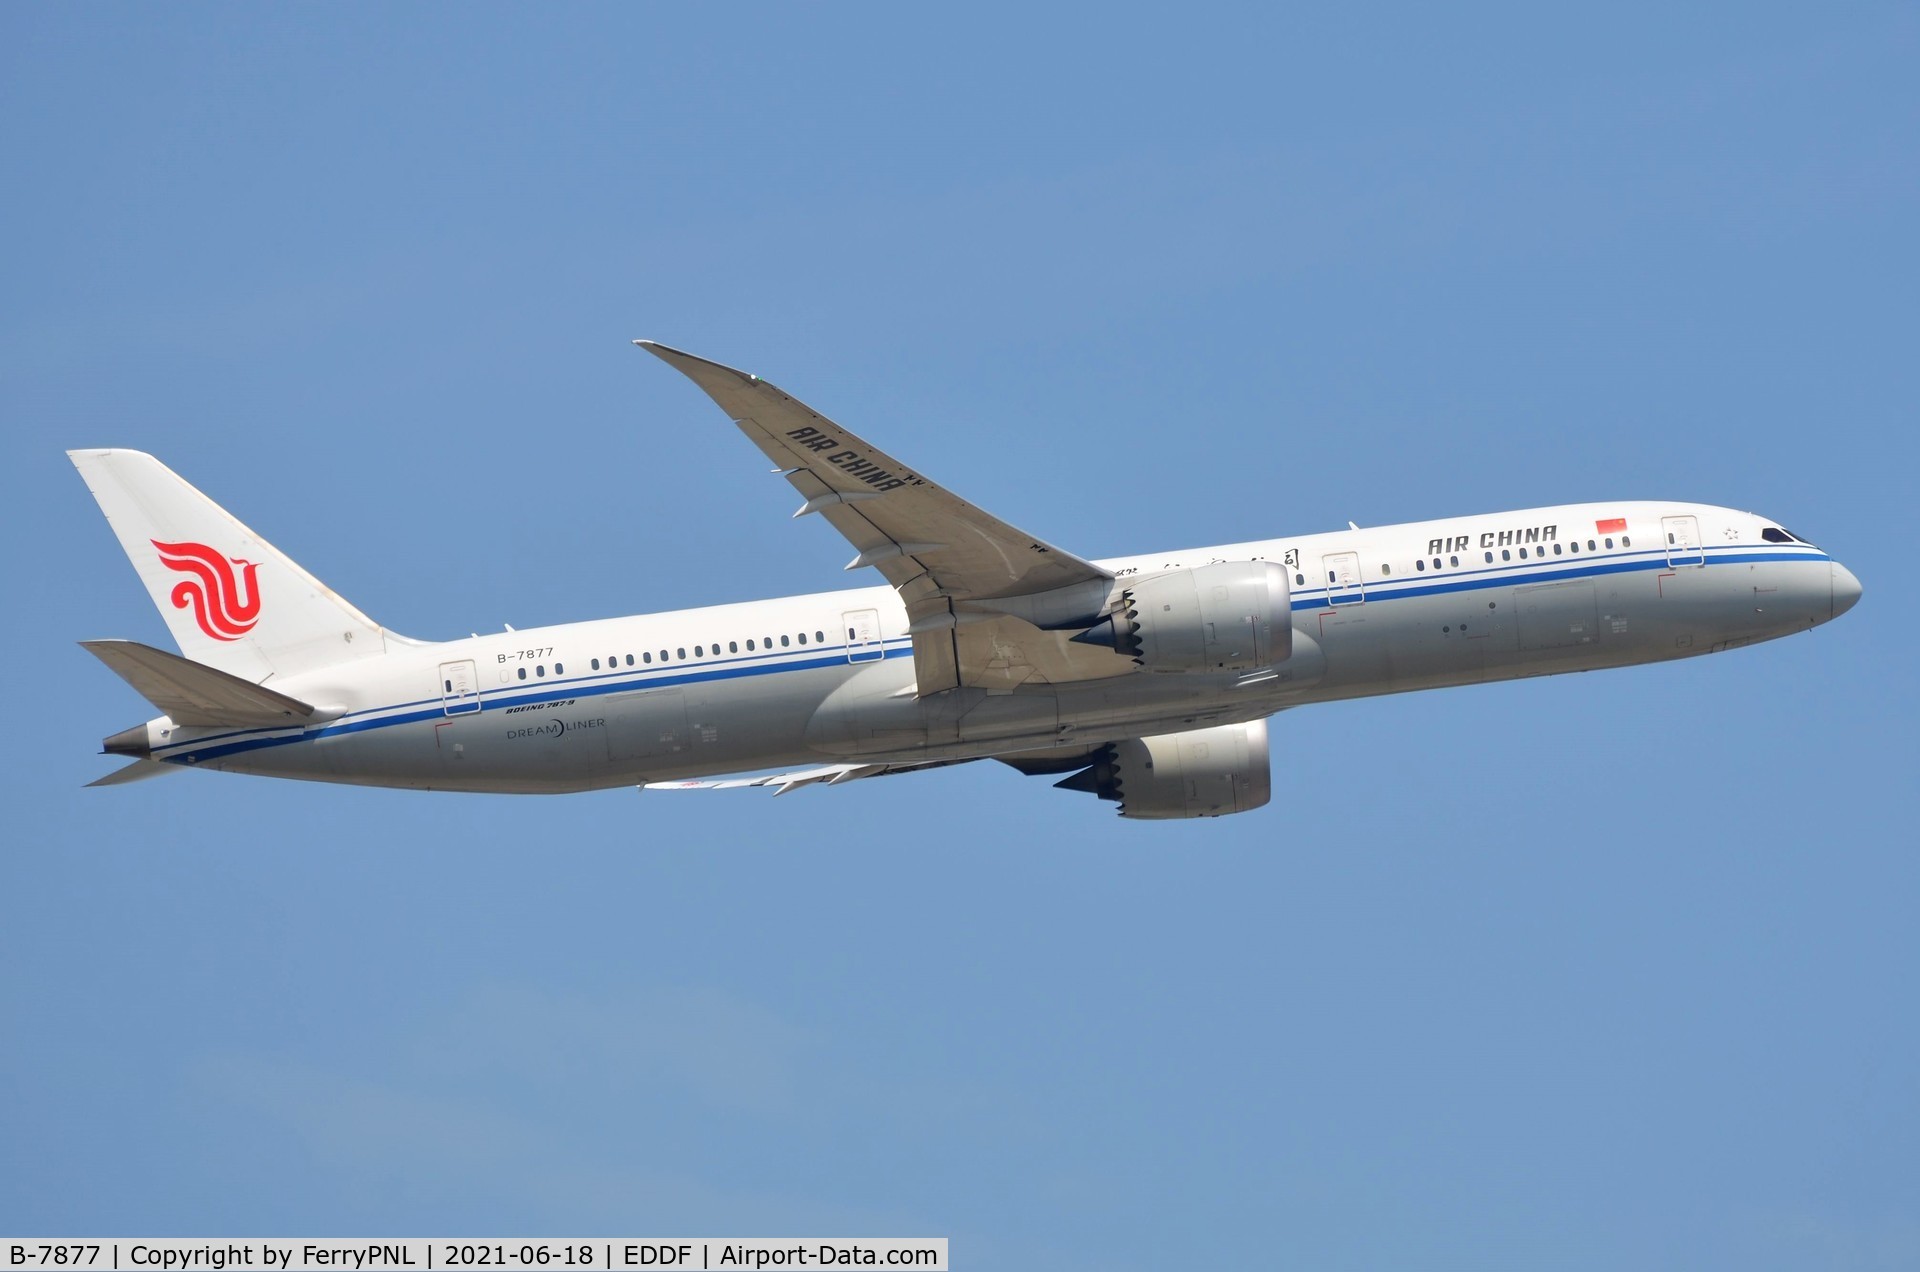 B-7877, 2016 Boeing 787-9 Dreamliner C/N 34305, Departure of Air China B789